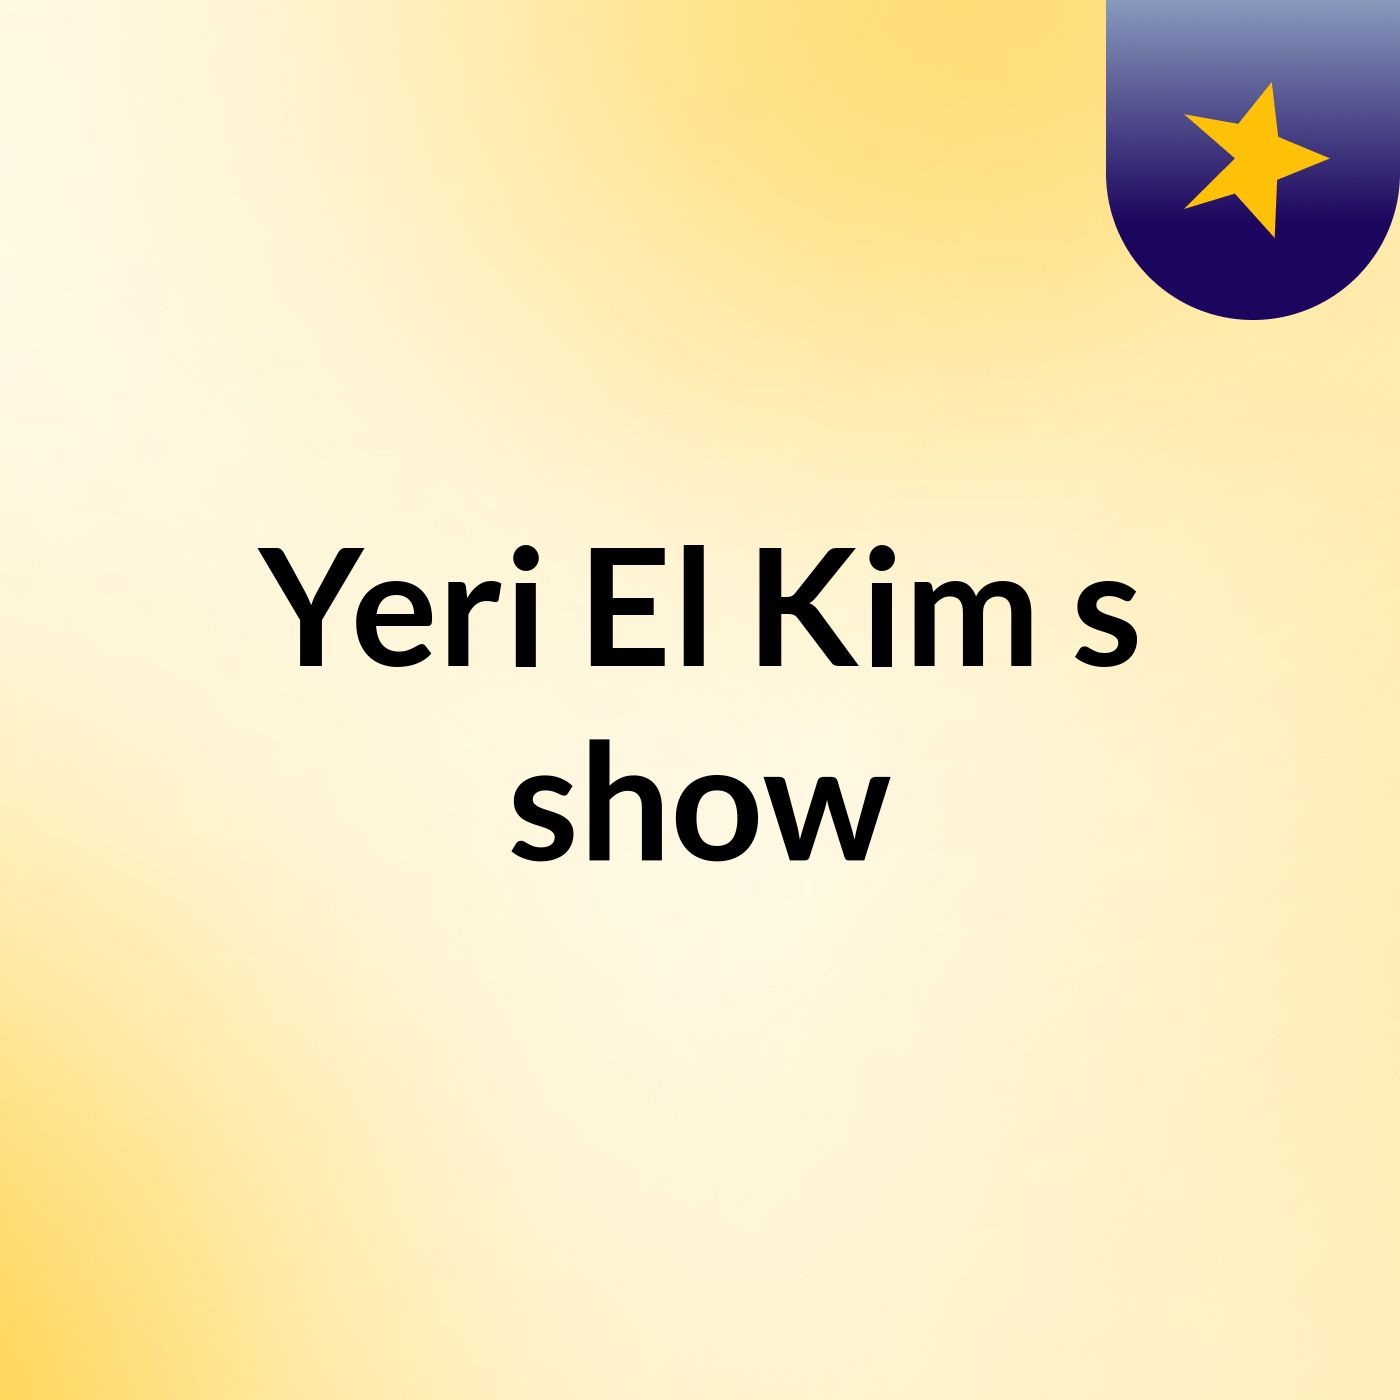 Yeri El Kim's show